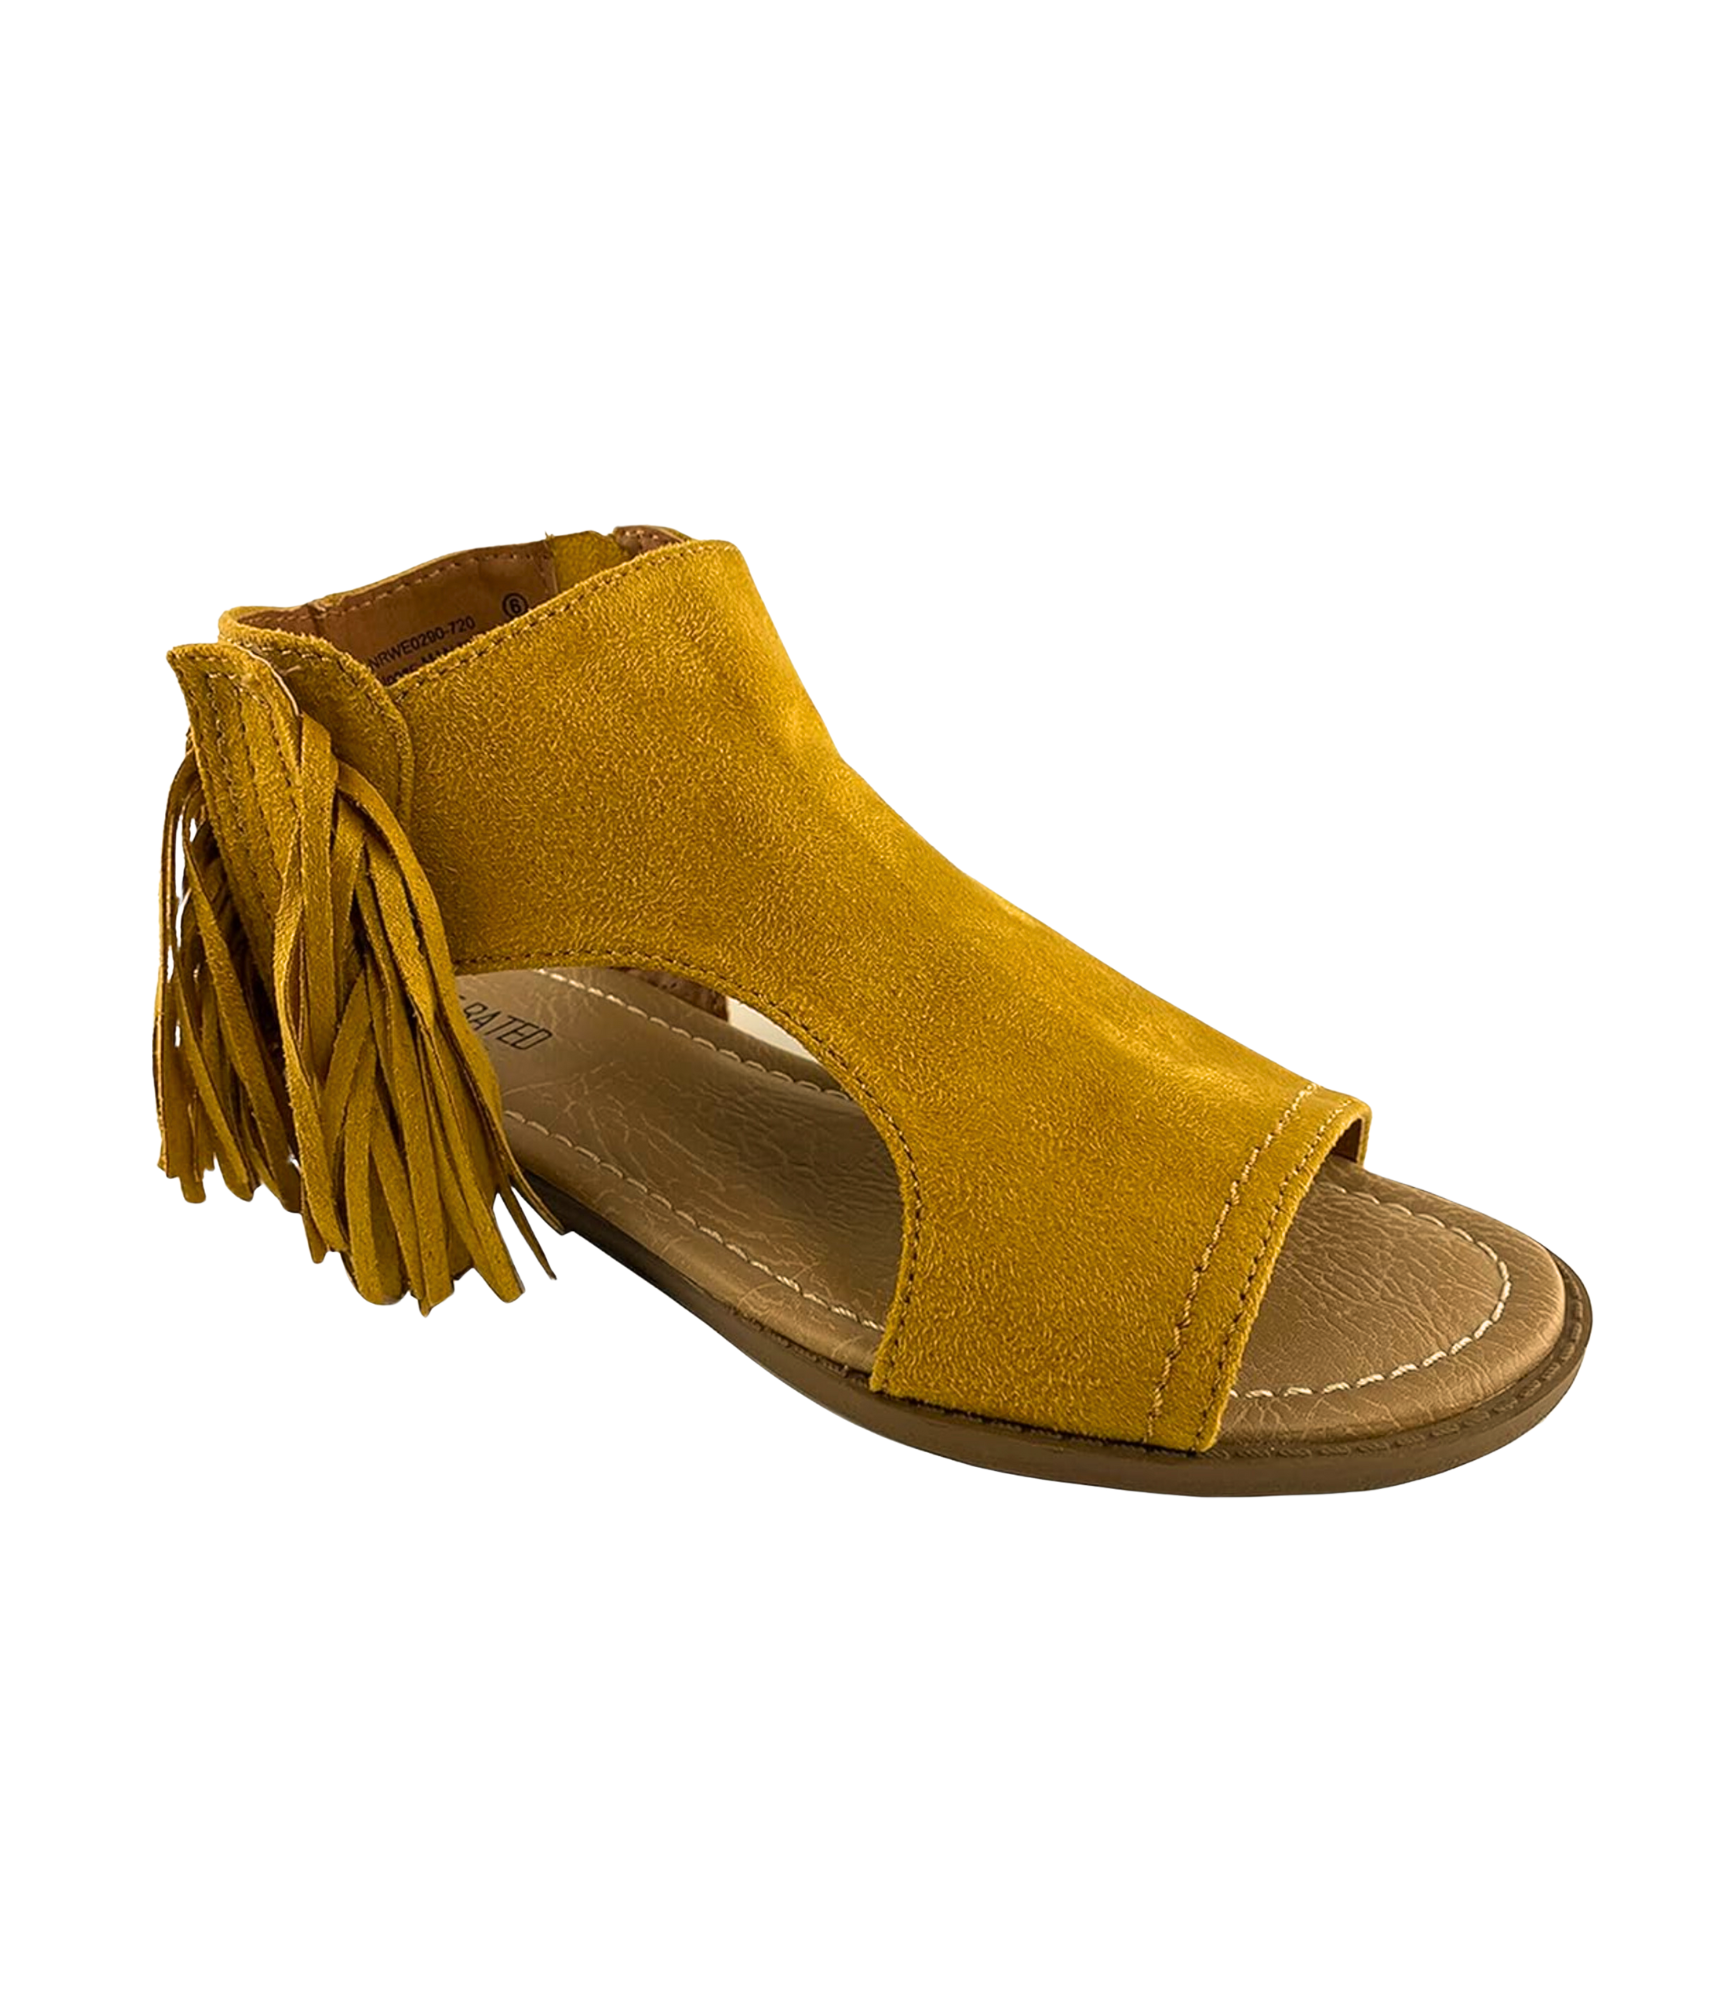 Jas Sandals in Mustard - Rural Haze